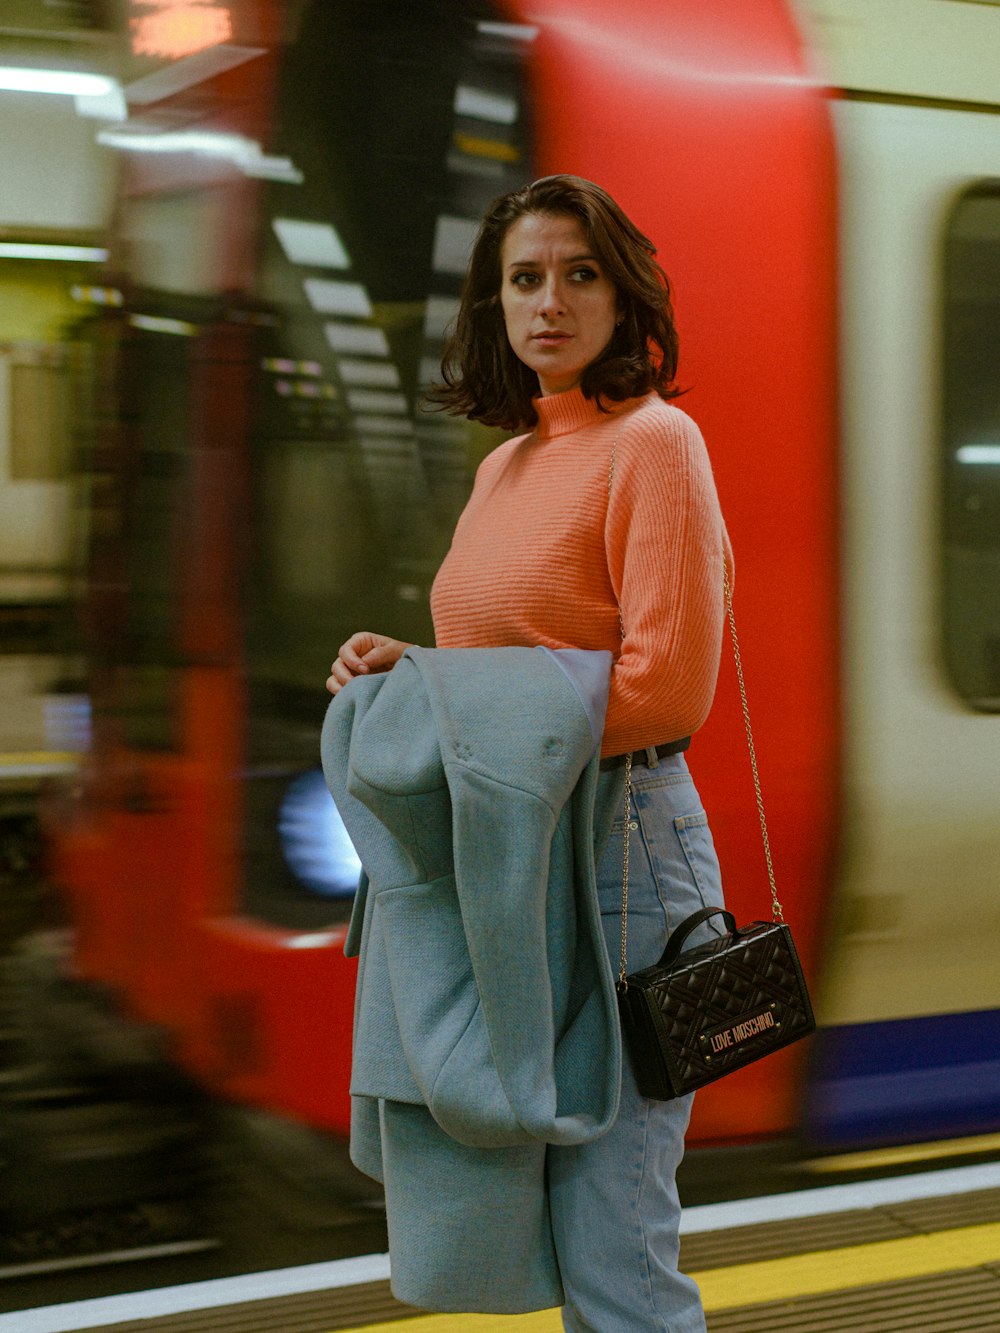 Una donna in piedi su una piattaforma del treno che tiene una borsa foto –  Borsa Immagine gratuita su Unsplash